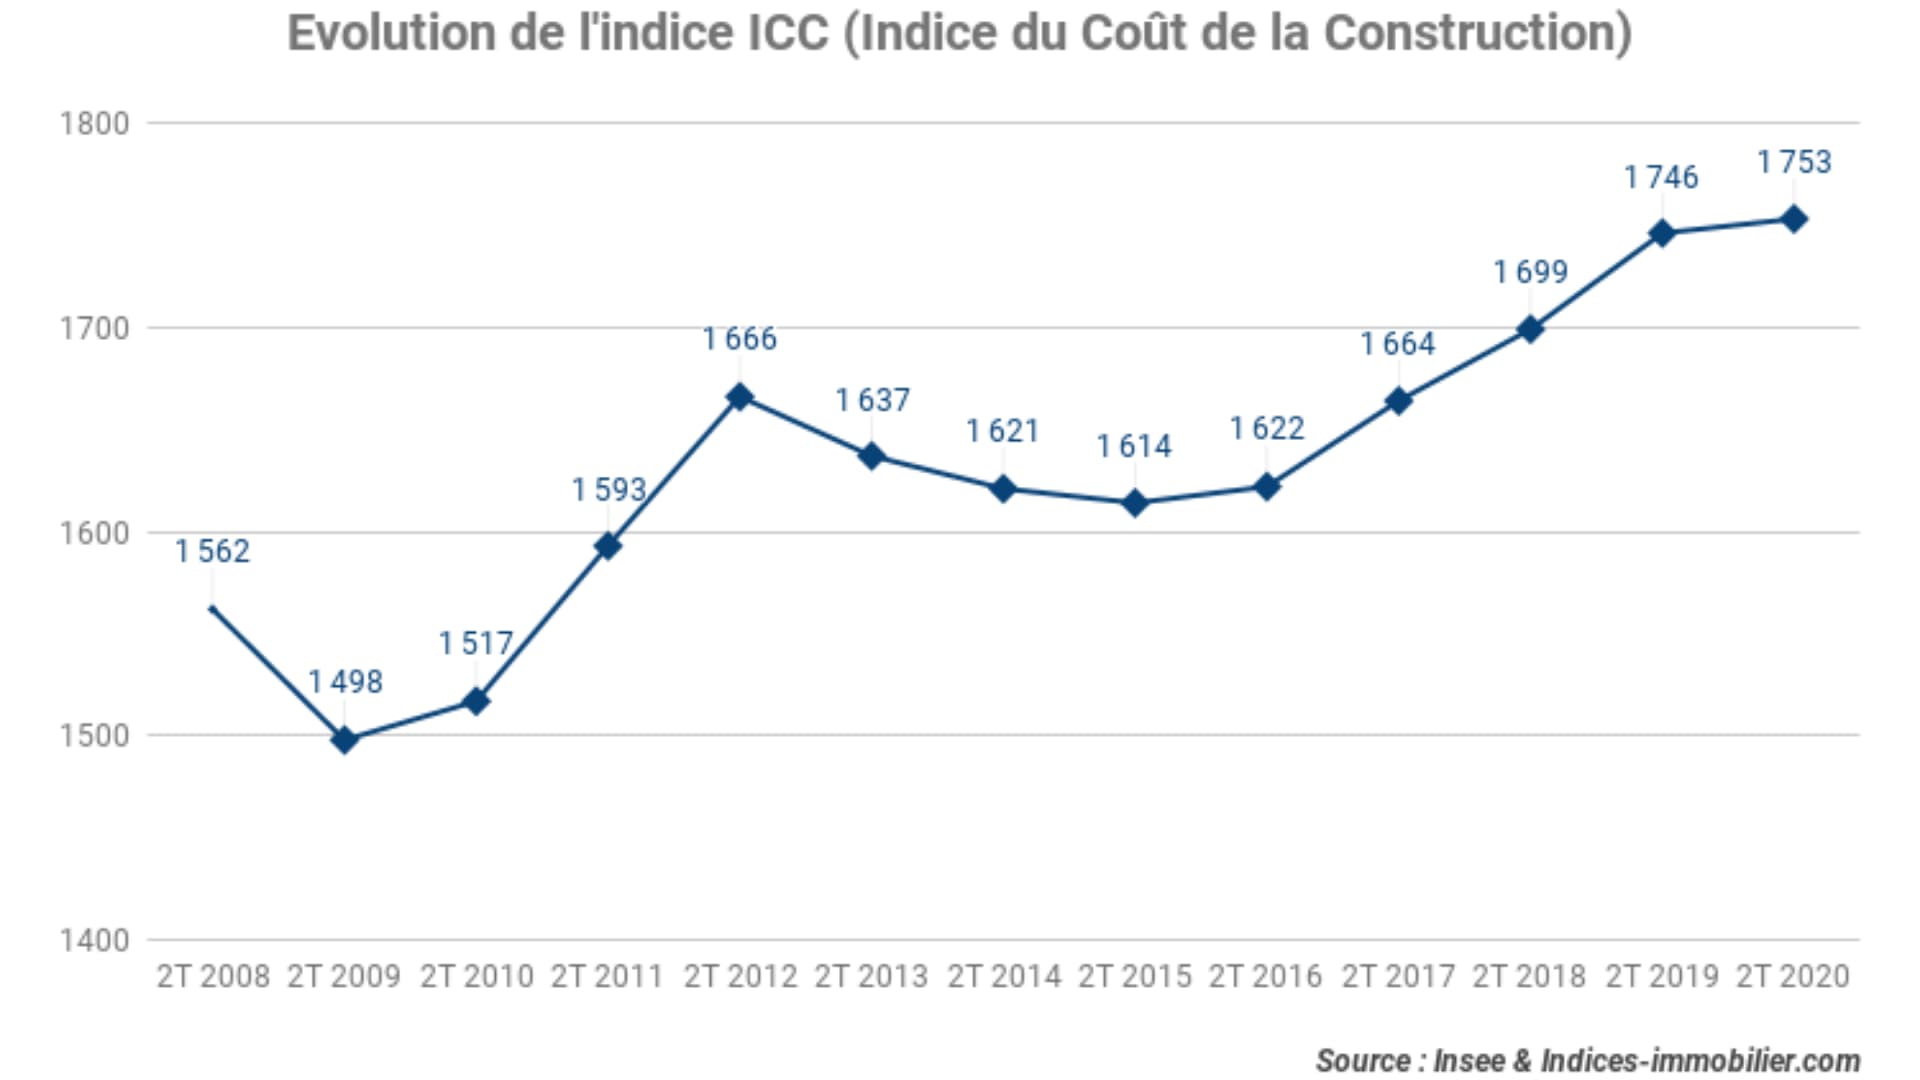 Évolution_de_l’Indice_du_Coût_de_la_Construction_2T_2020